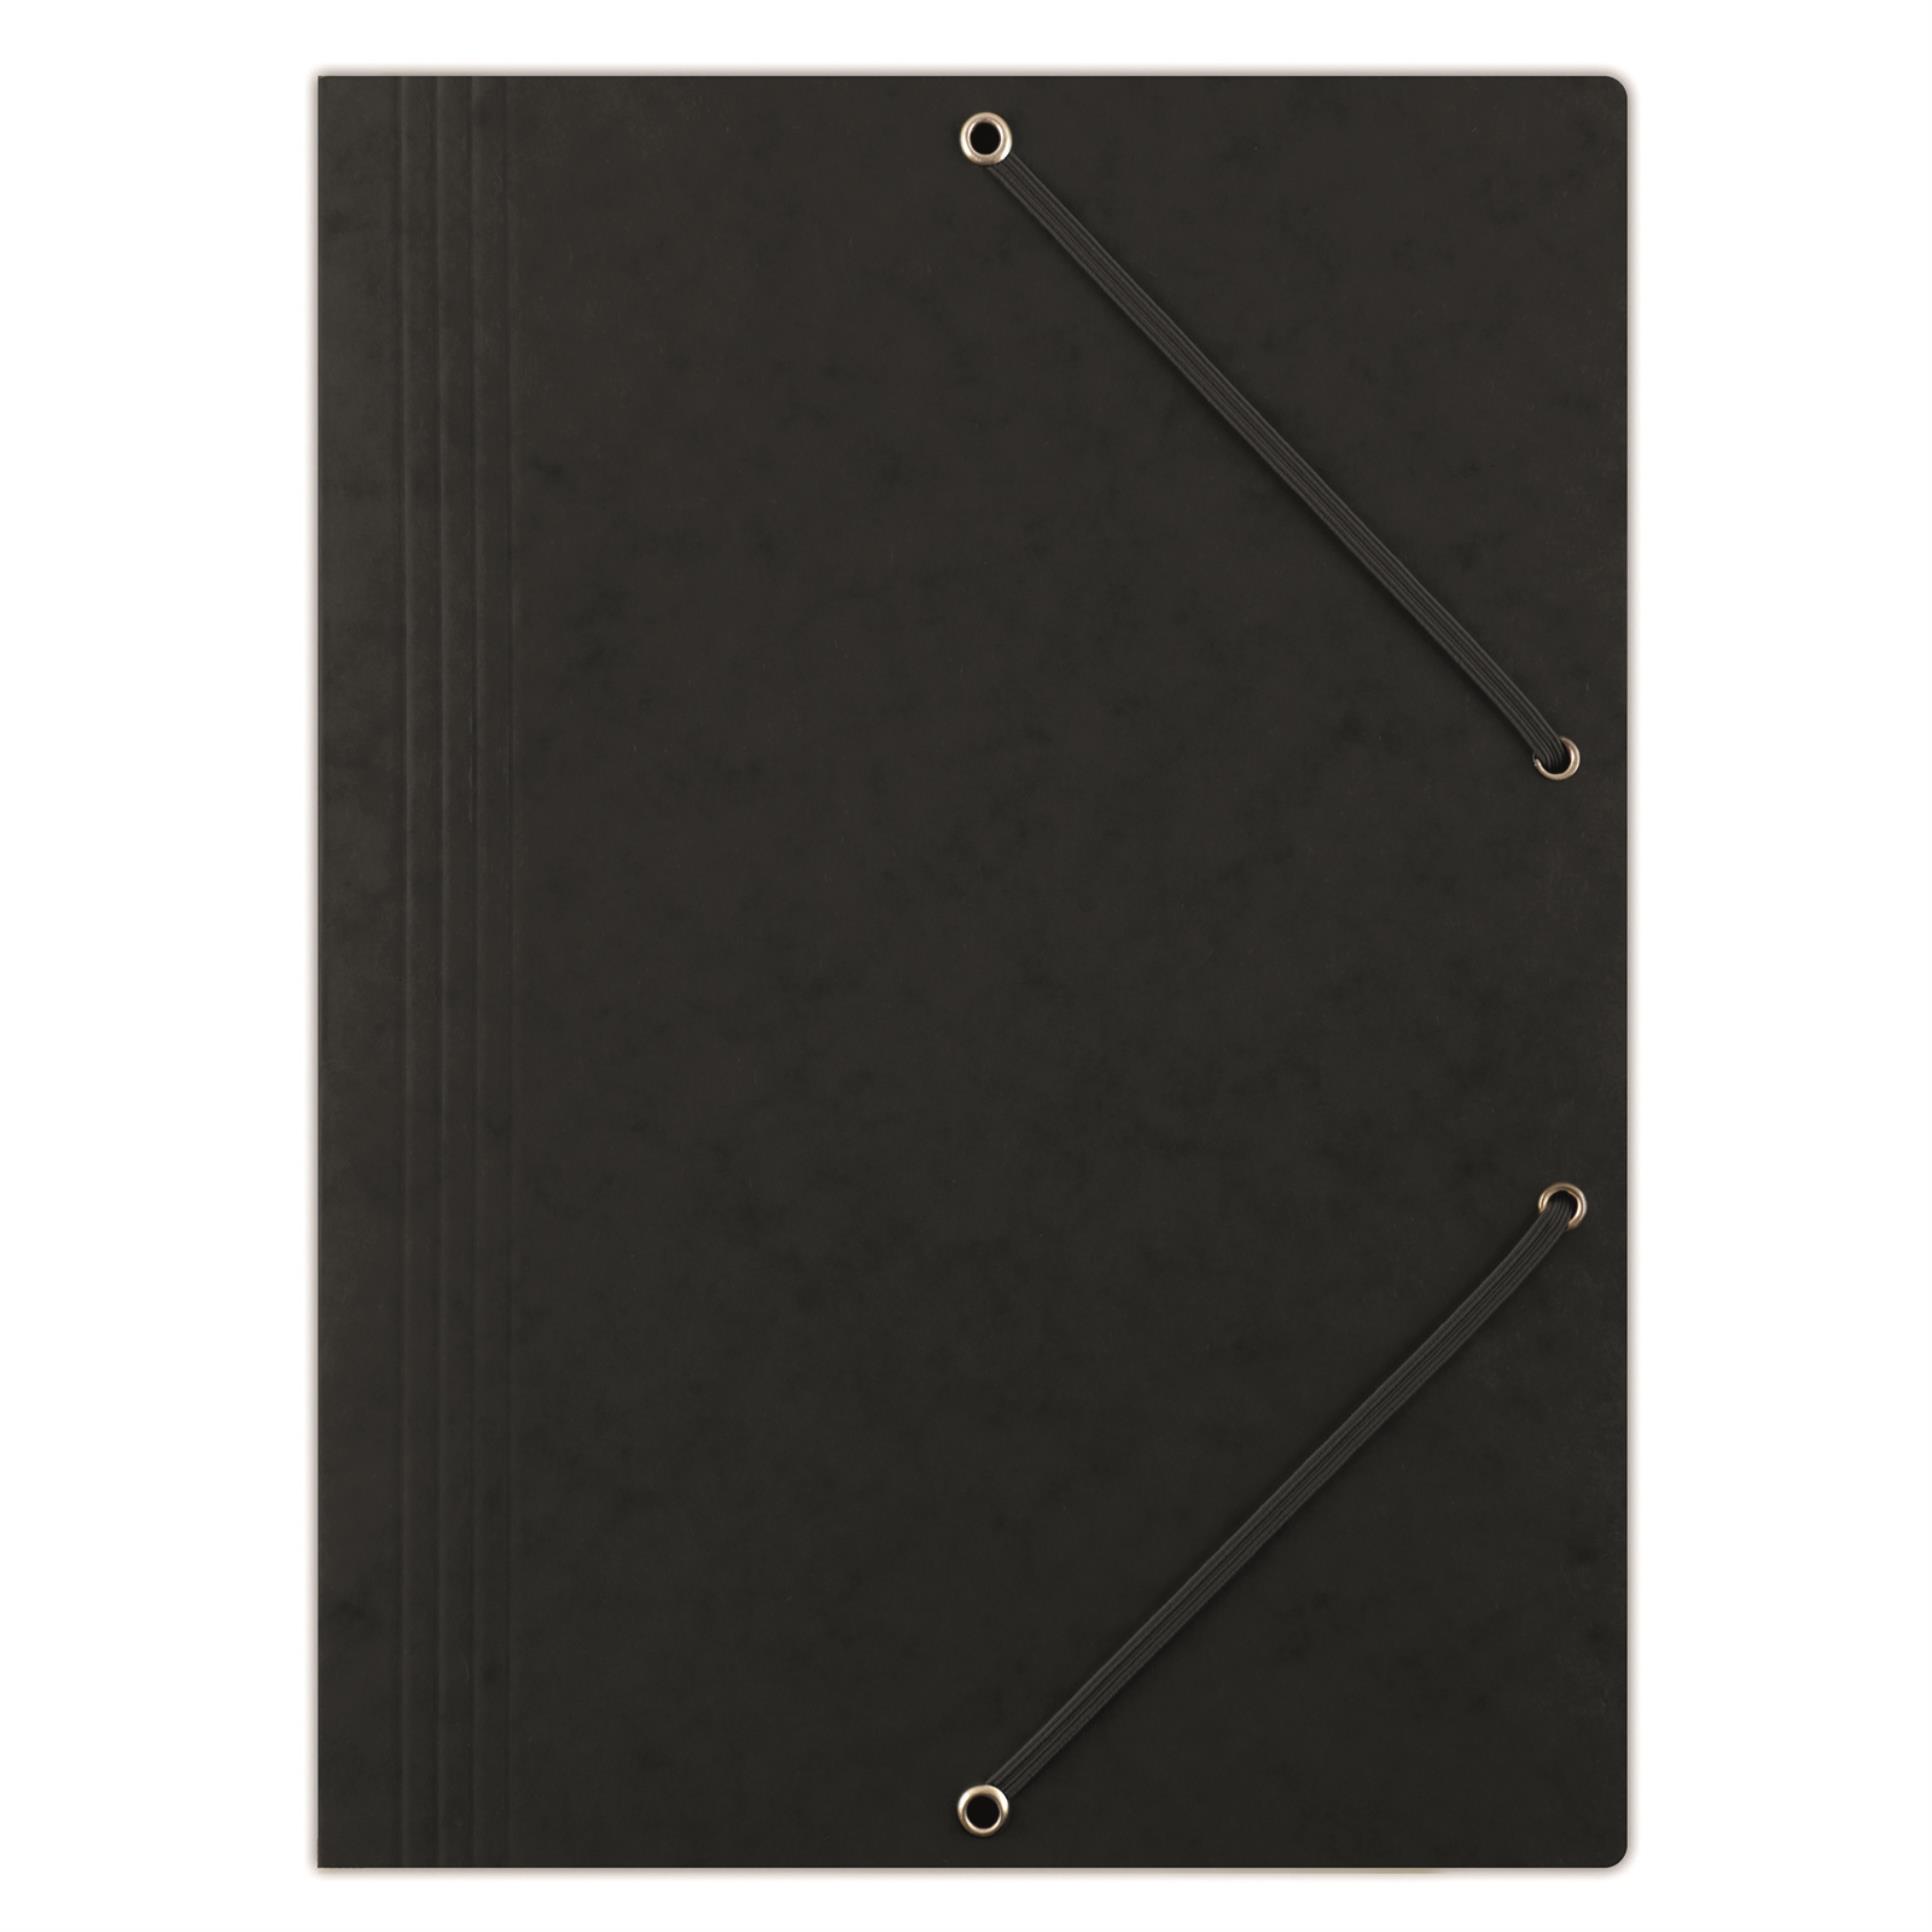 Prešpánové desky s chlopněmi a gumičkou Donau - A4, černé, 1 ks